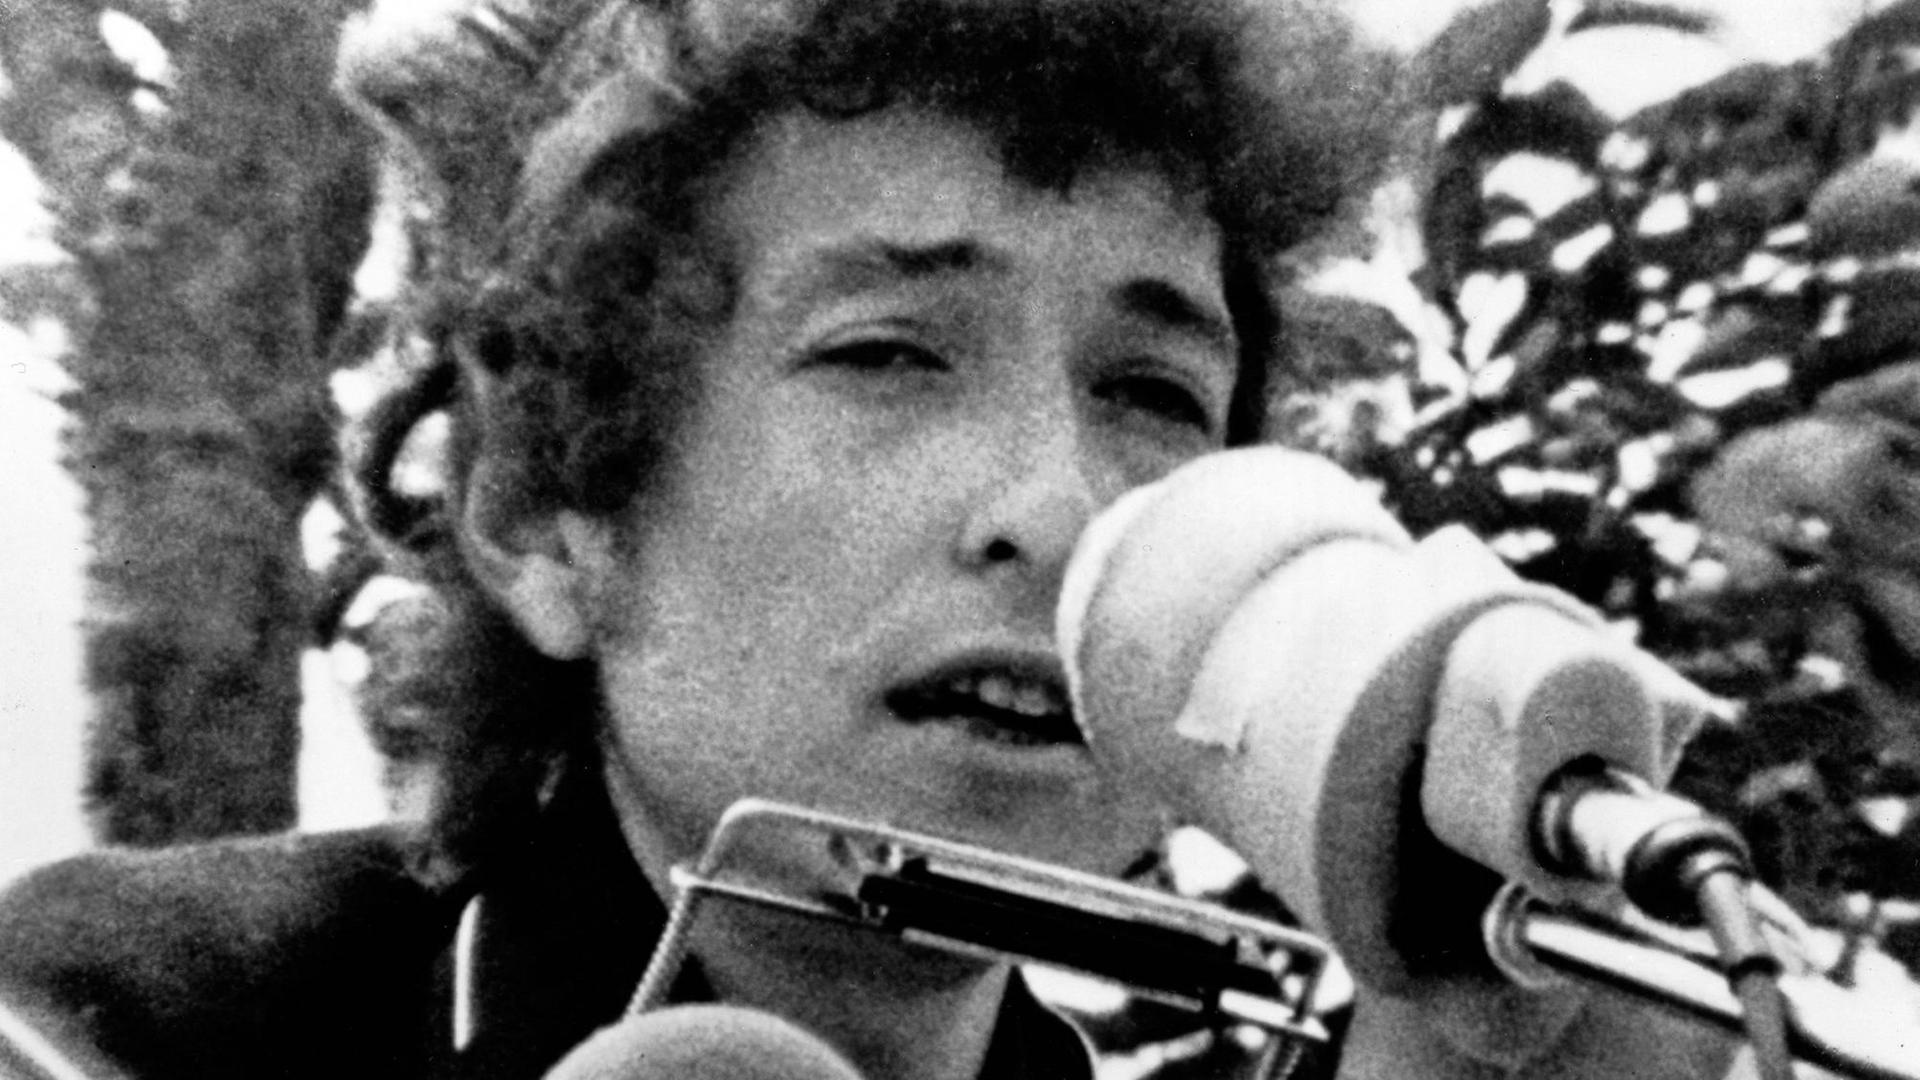 Bob Dylan auf einem grobkörnigen Schwarz-Weiß-Foto aus den 1960er Jahren. Er hat eine Mundharmonika und ein Mikro vorm Gesicht.